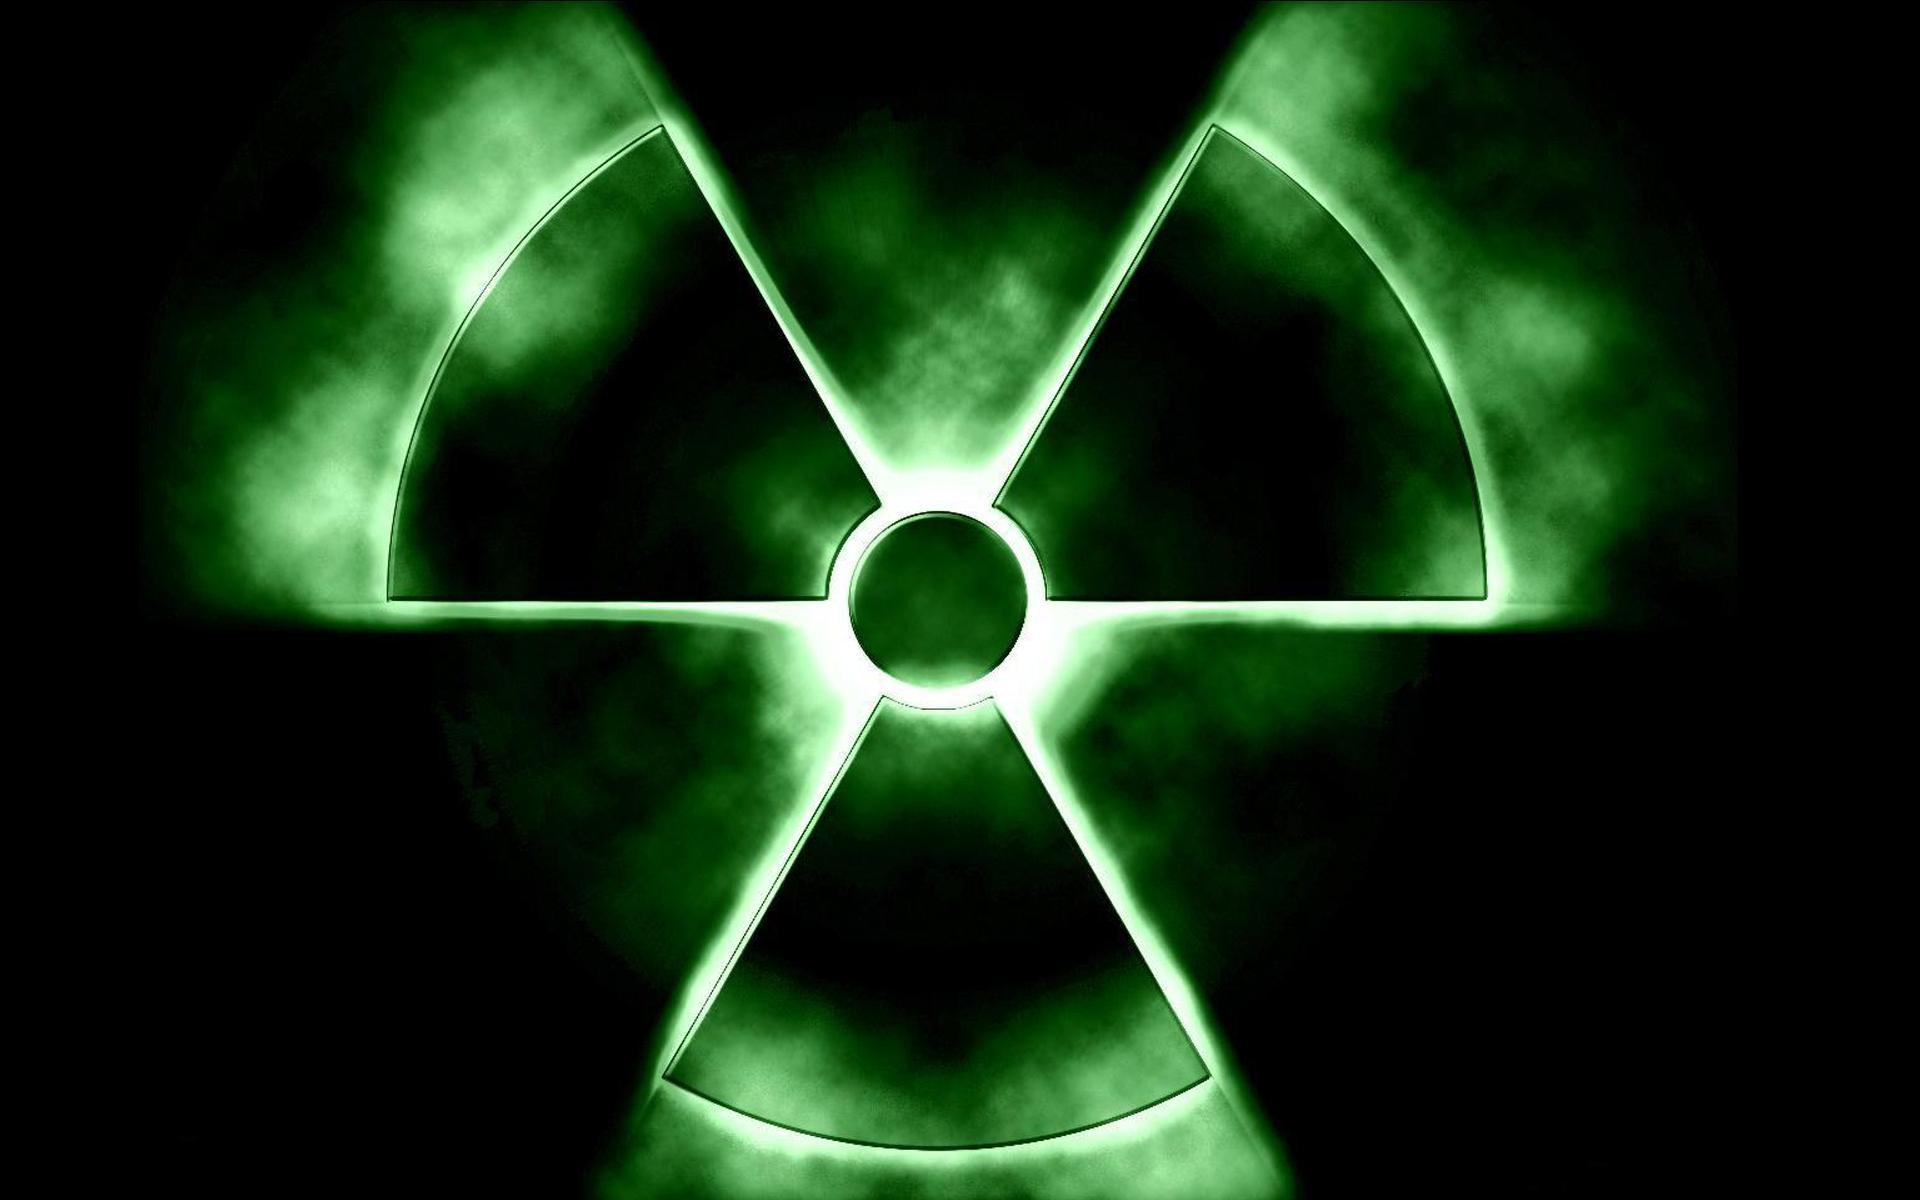 nuke symbol, Desktop and mobile wallpaper